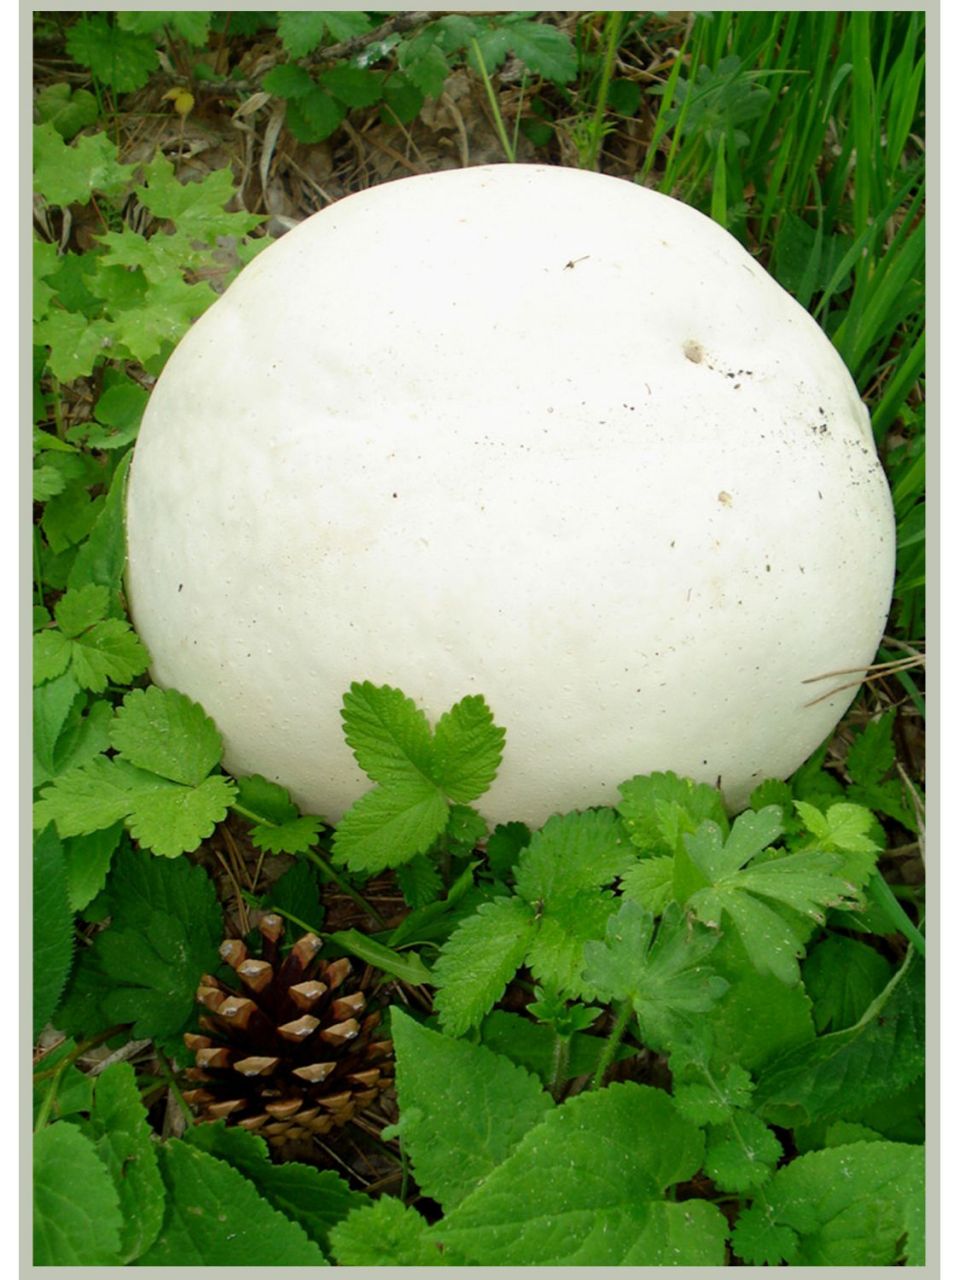 巨型马勃是zui著名的可食真菌之一,足球状子实体重量通常超过4kg 外